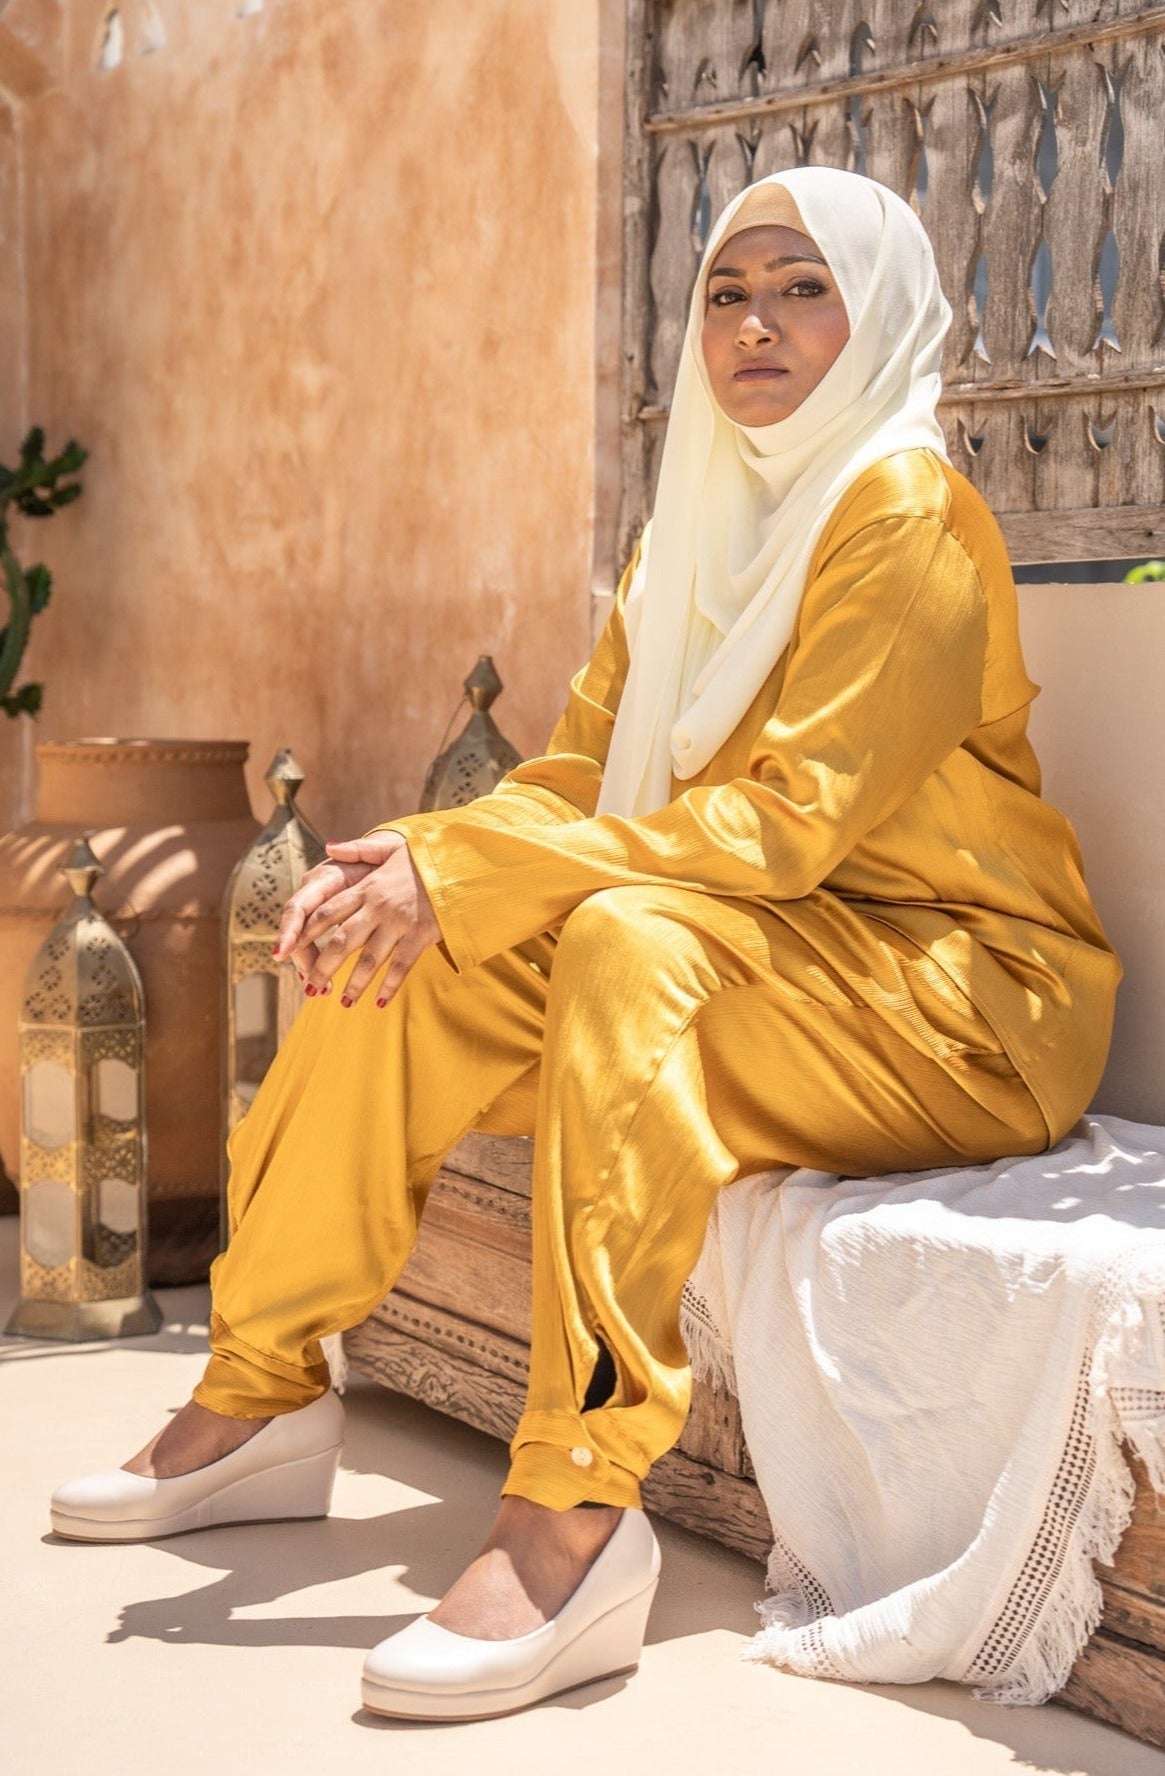 Curve Cuffed Pants in Arabian Gold & Pale Cooper